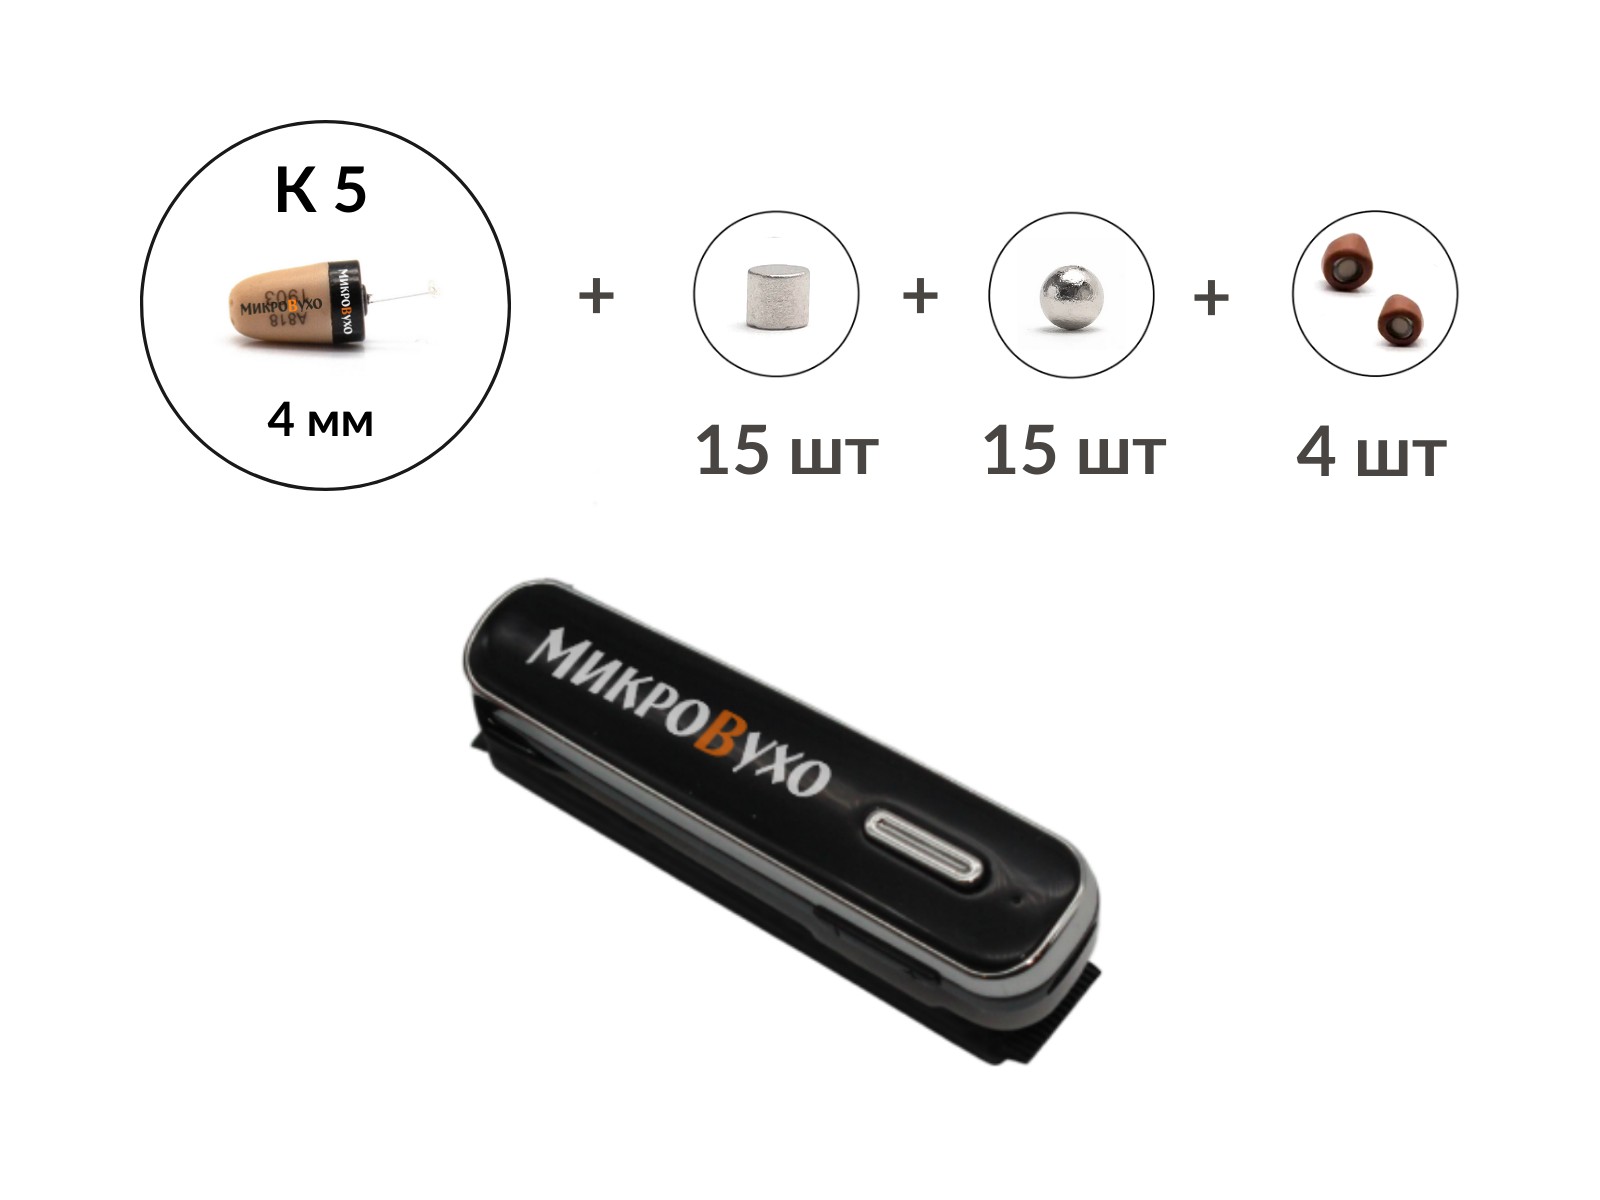 Универсальная гарнитура Bluetooth Box Premier Lite Plus с капсулой K5 4 мм и магнитами 2 мм - изображение 4